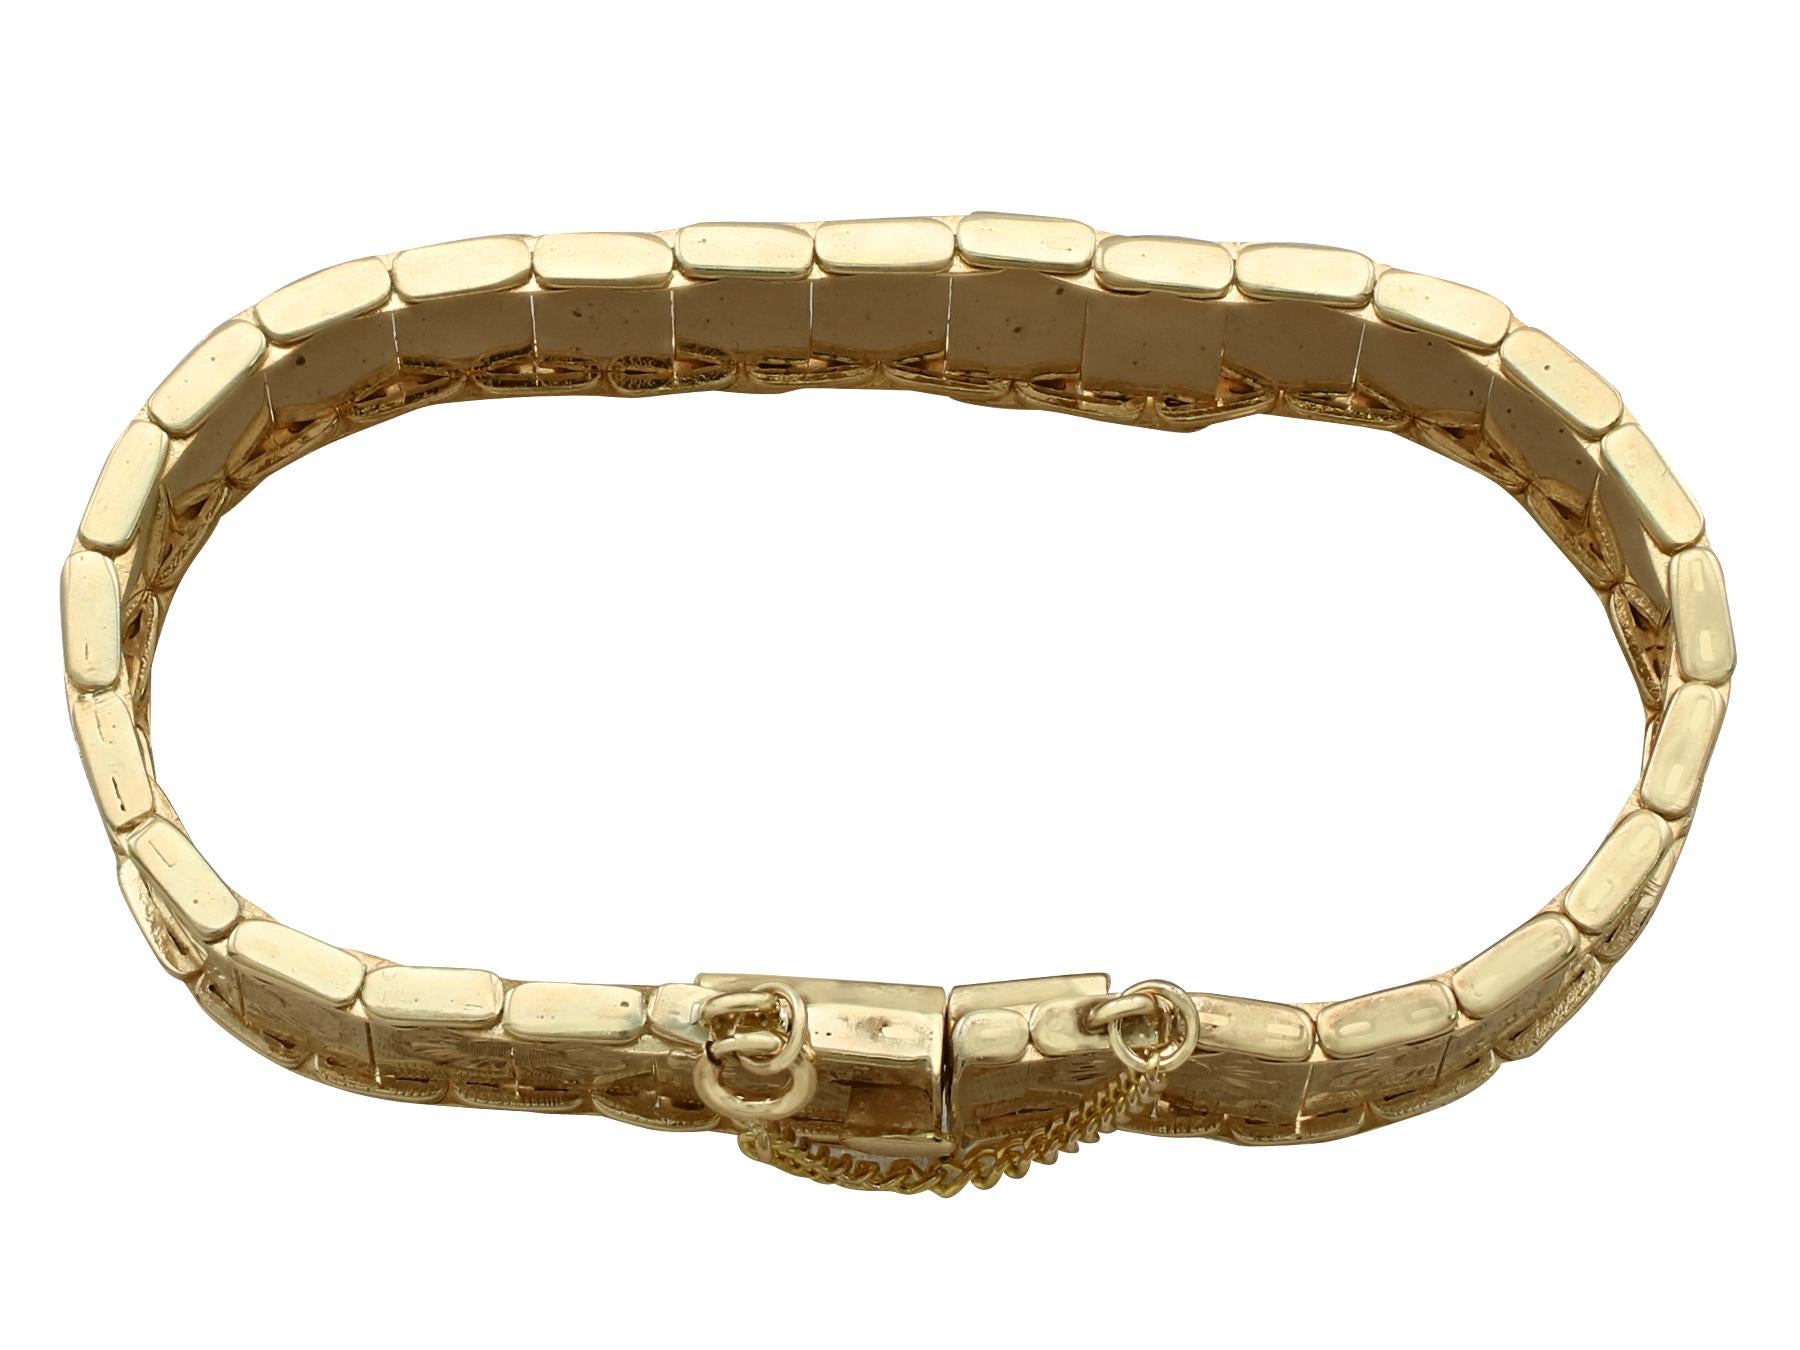 Un impressionnant bracelet vintage des années 1960 en or jaune 9 carats, qui fait partie de nos diverses collections de bijoux vintage et de bijoux de succession.

Ce bracelet vintage fin et impressionnant a été réalisé en or jaune 9k.

Le bracelet